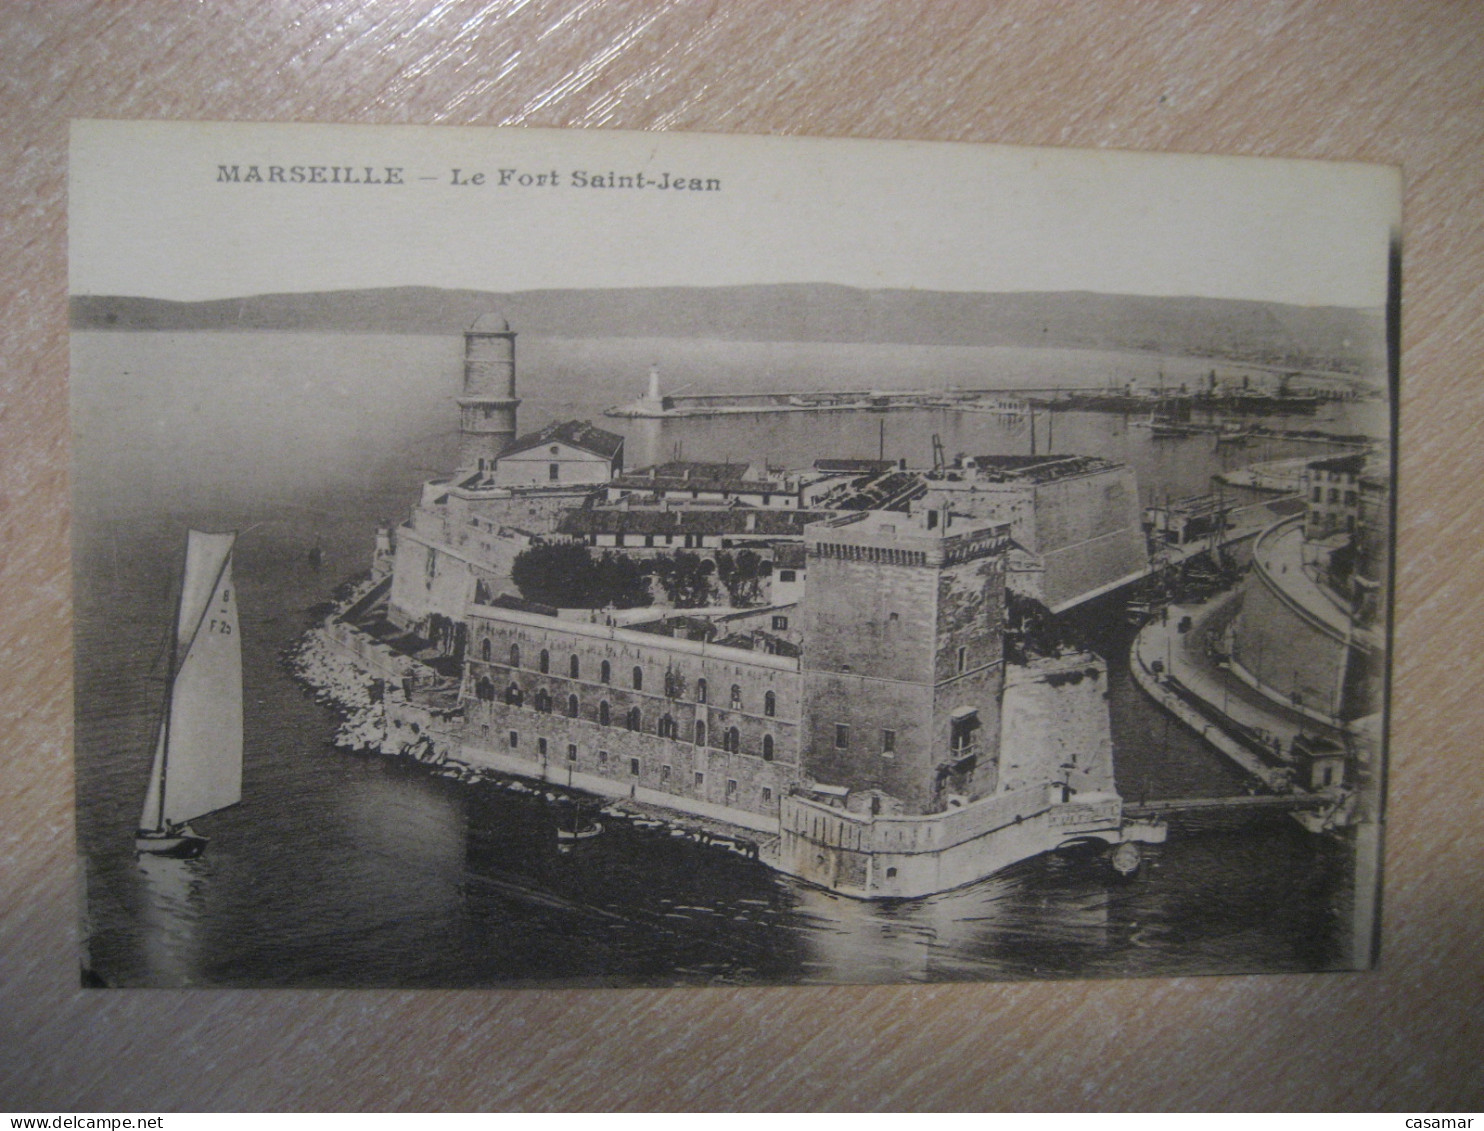 MARSEILLE Le Fort Saint-Jean Bouches-du-Rhone Postcard FRANCE - Unclassified